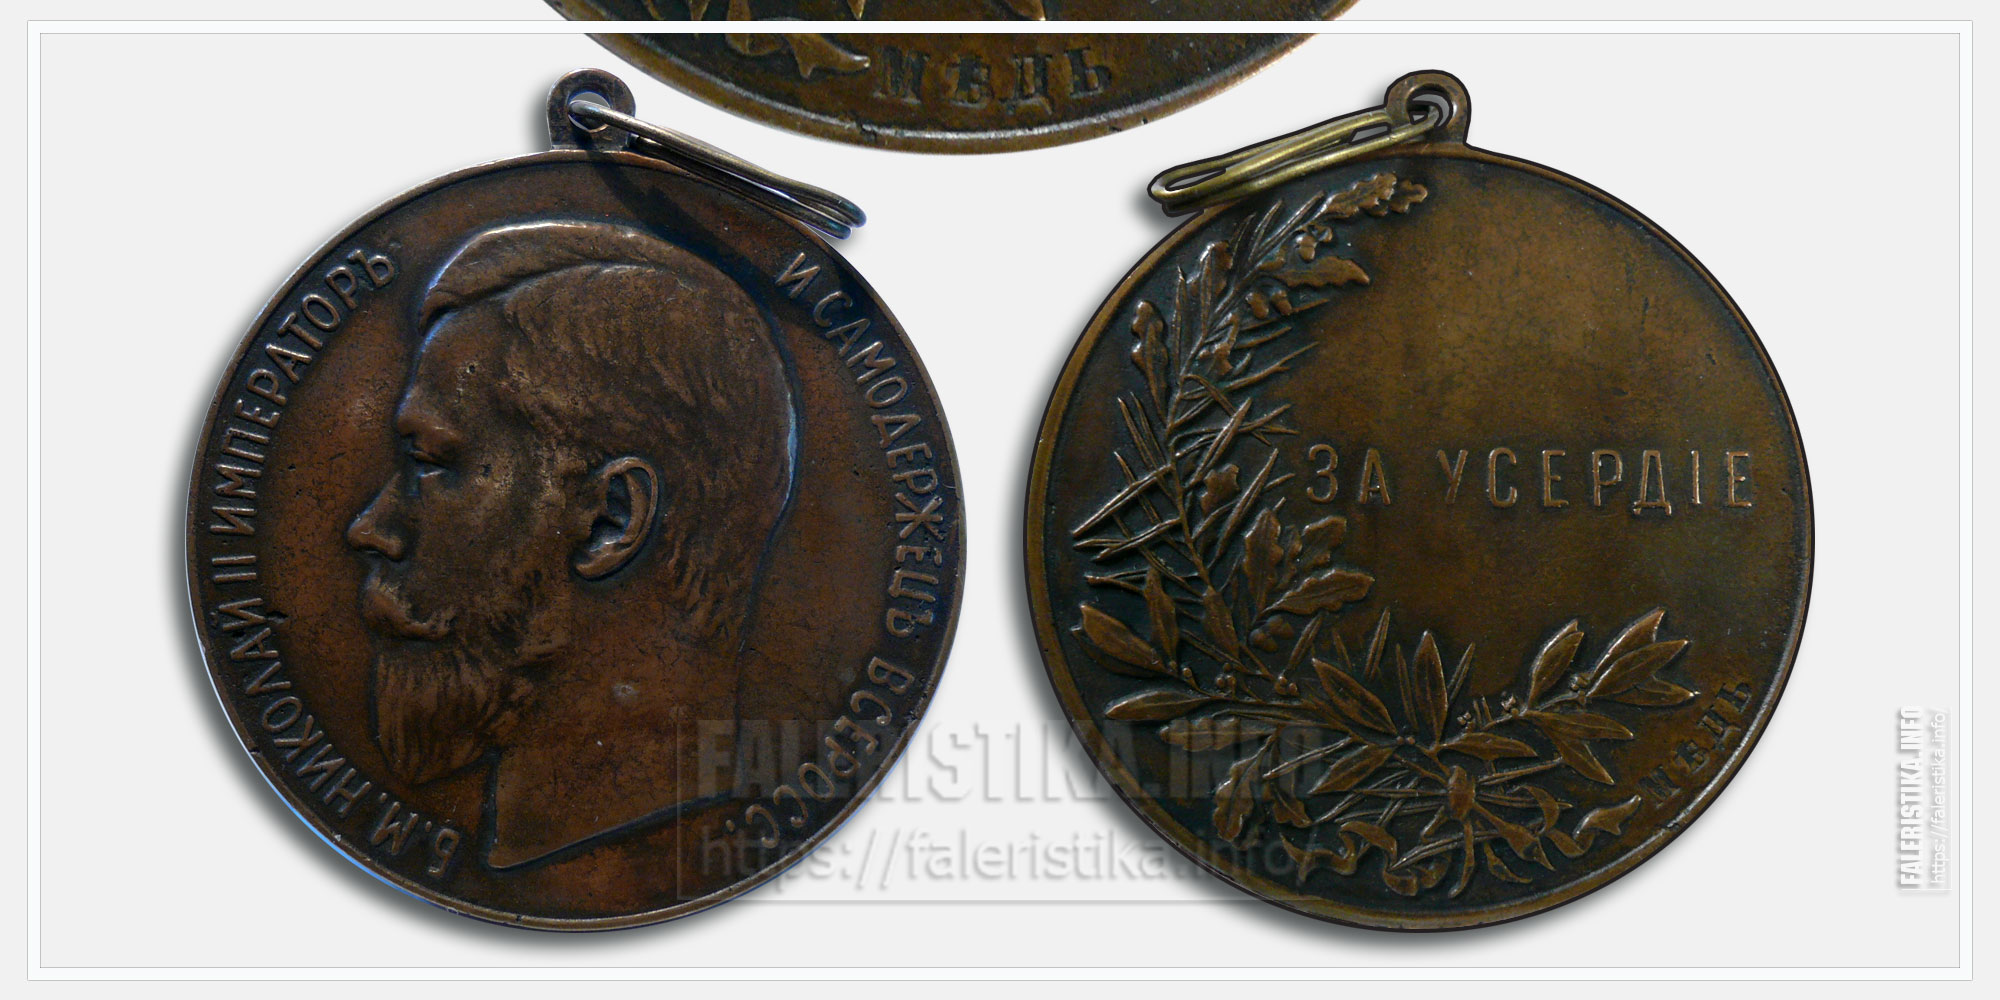 Медаль "За усердие" Николай II (медь)